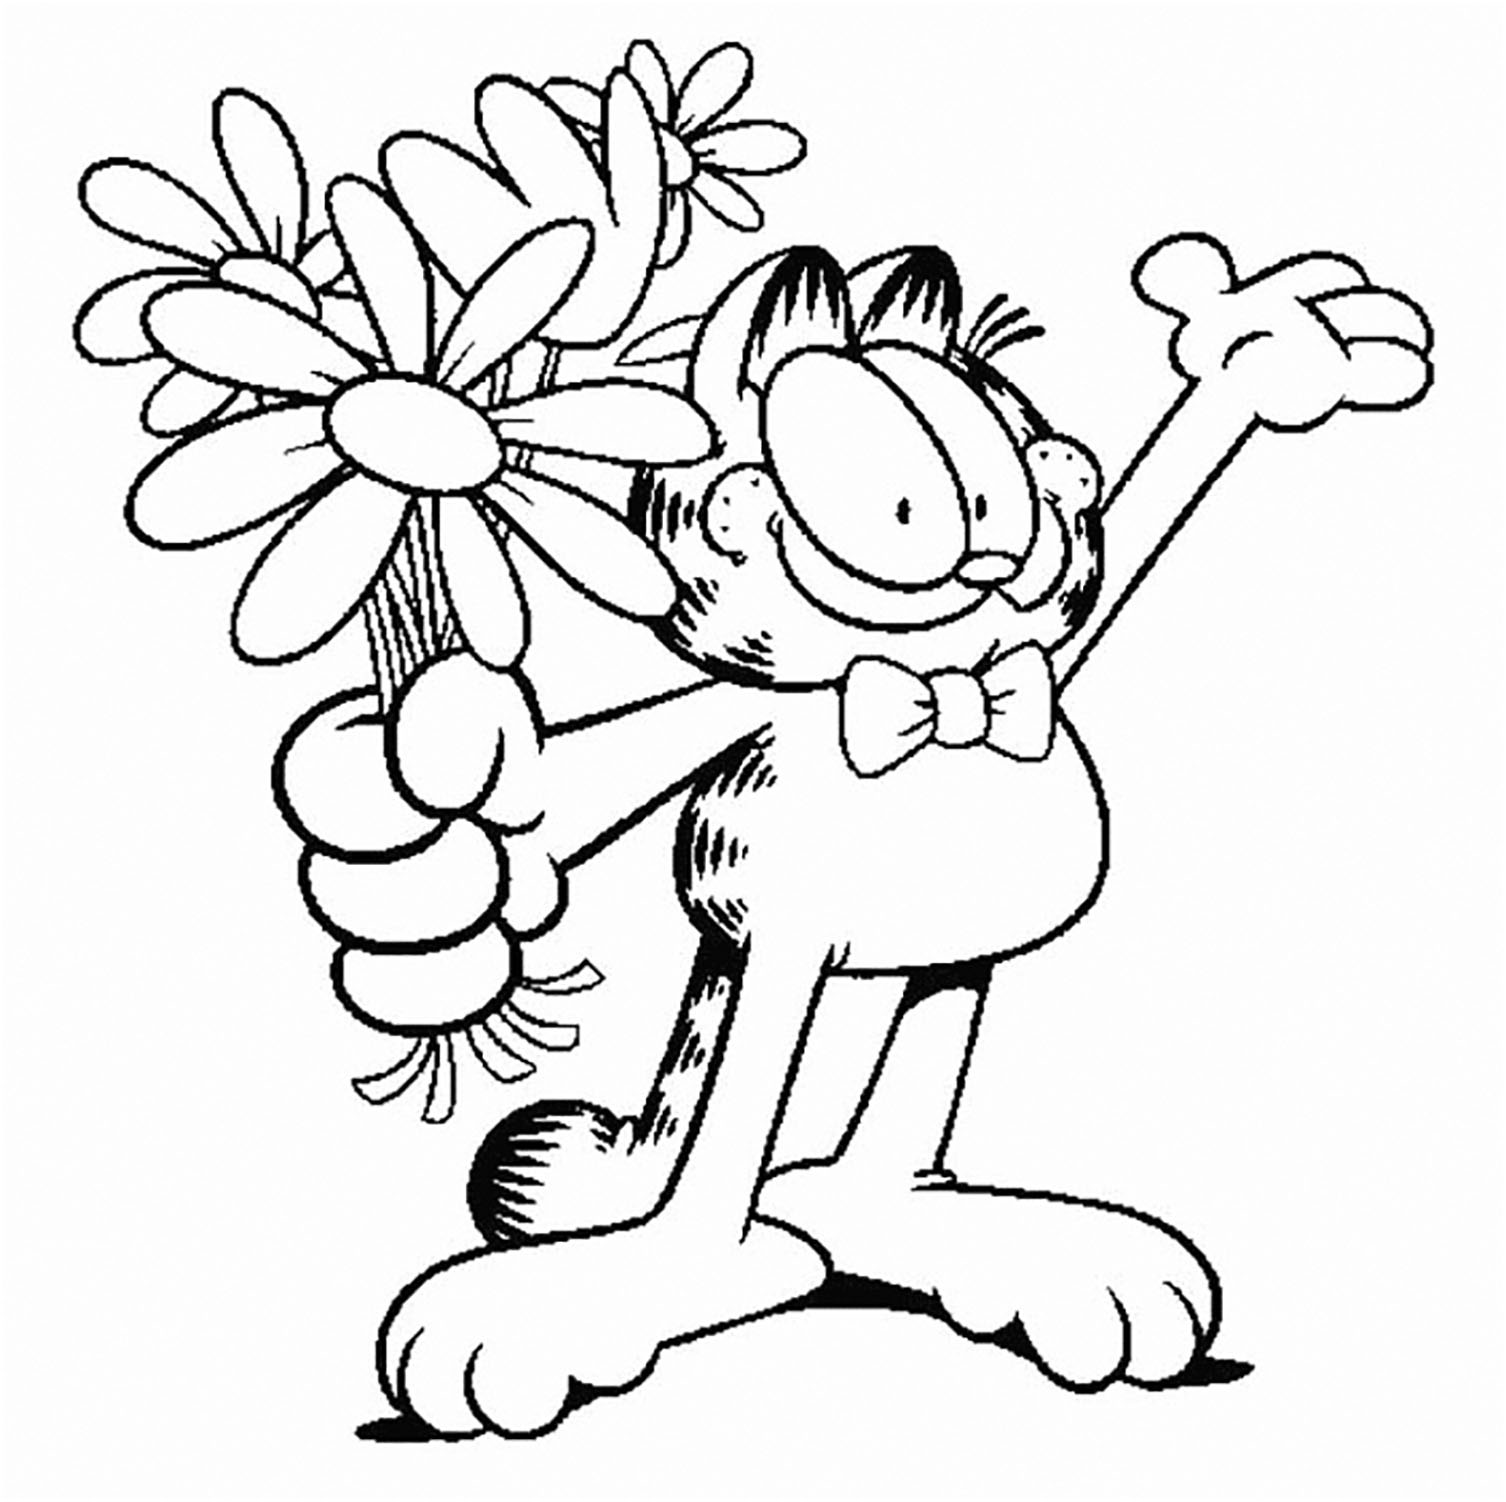 Dibujo para colorear de Garfield para niños